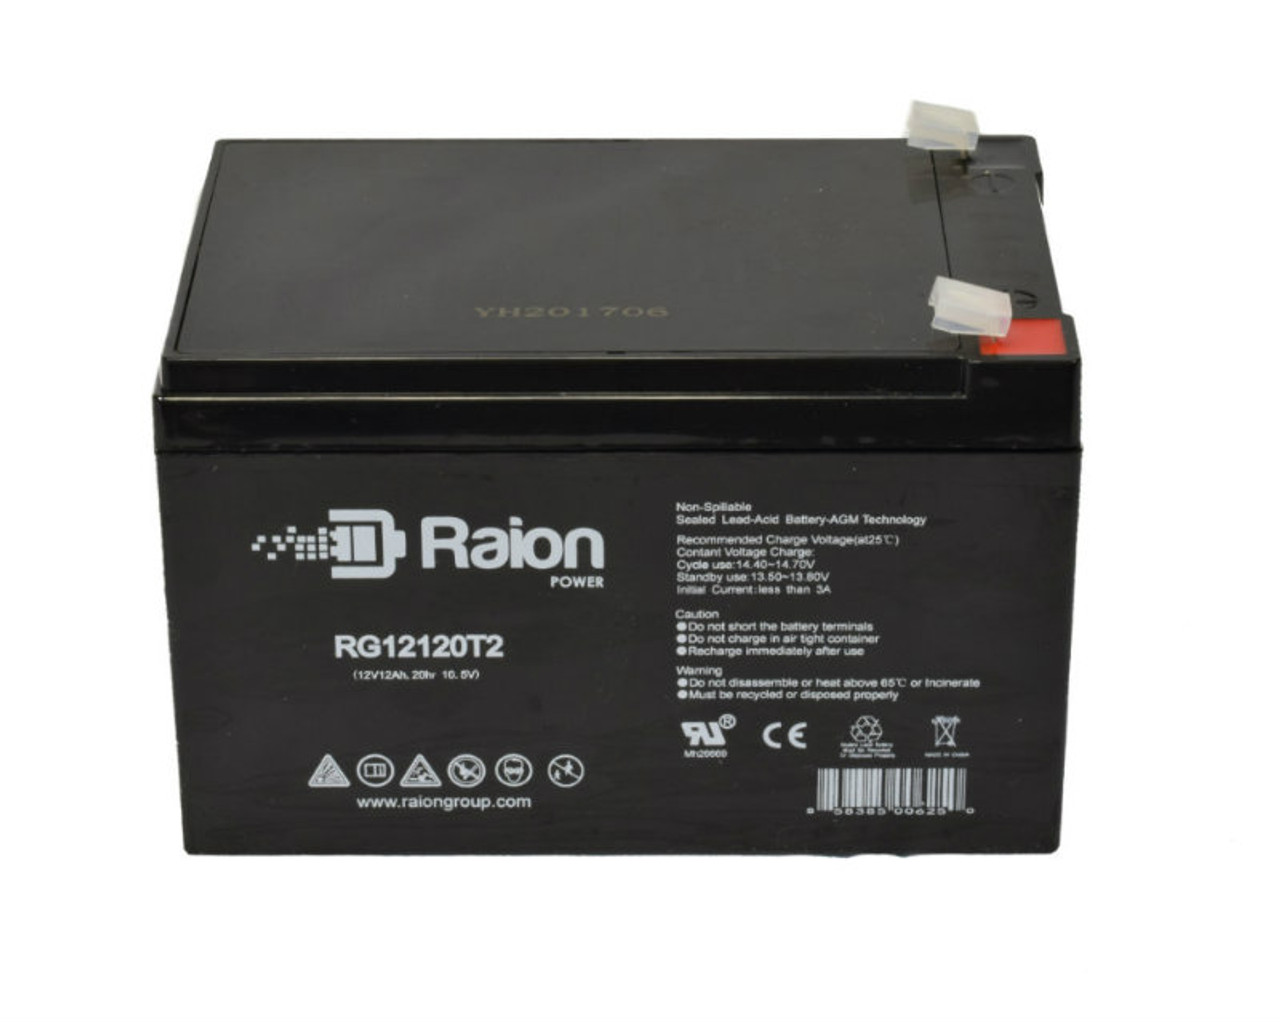 Raion Power RG12120T2 SLA Battery for Power-Sonic PG-12V14